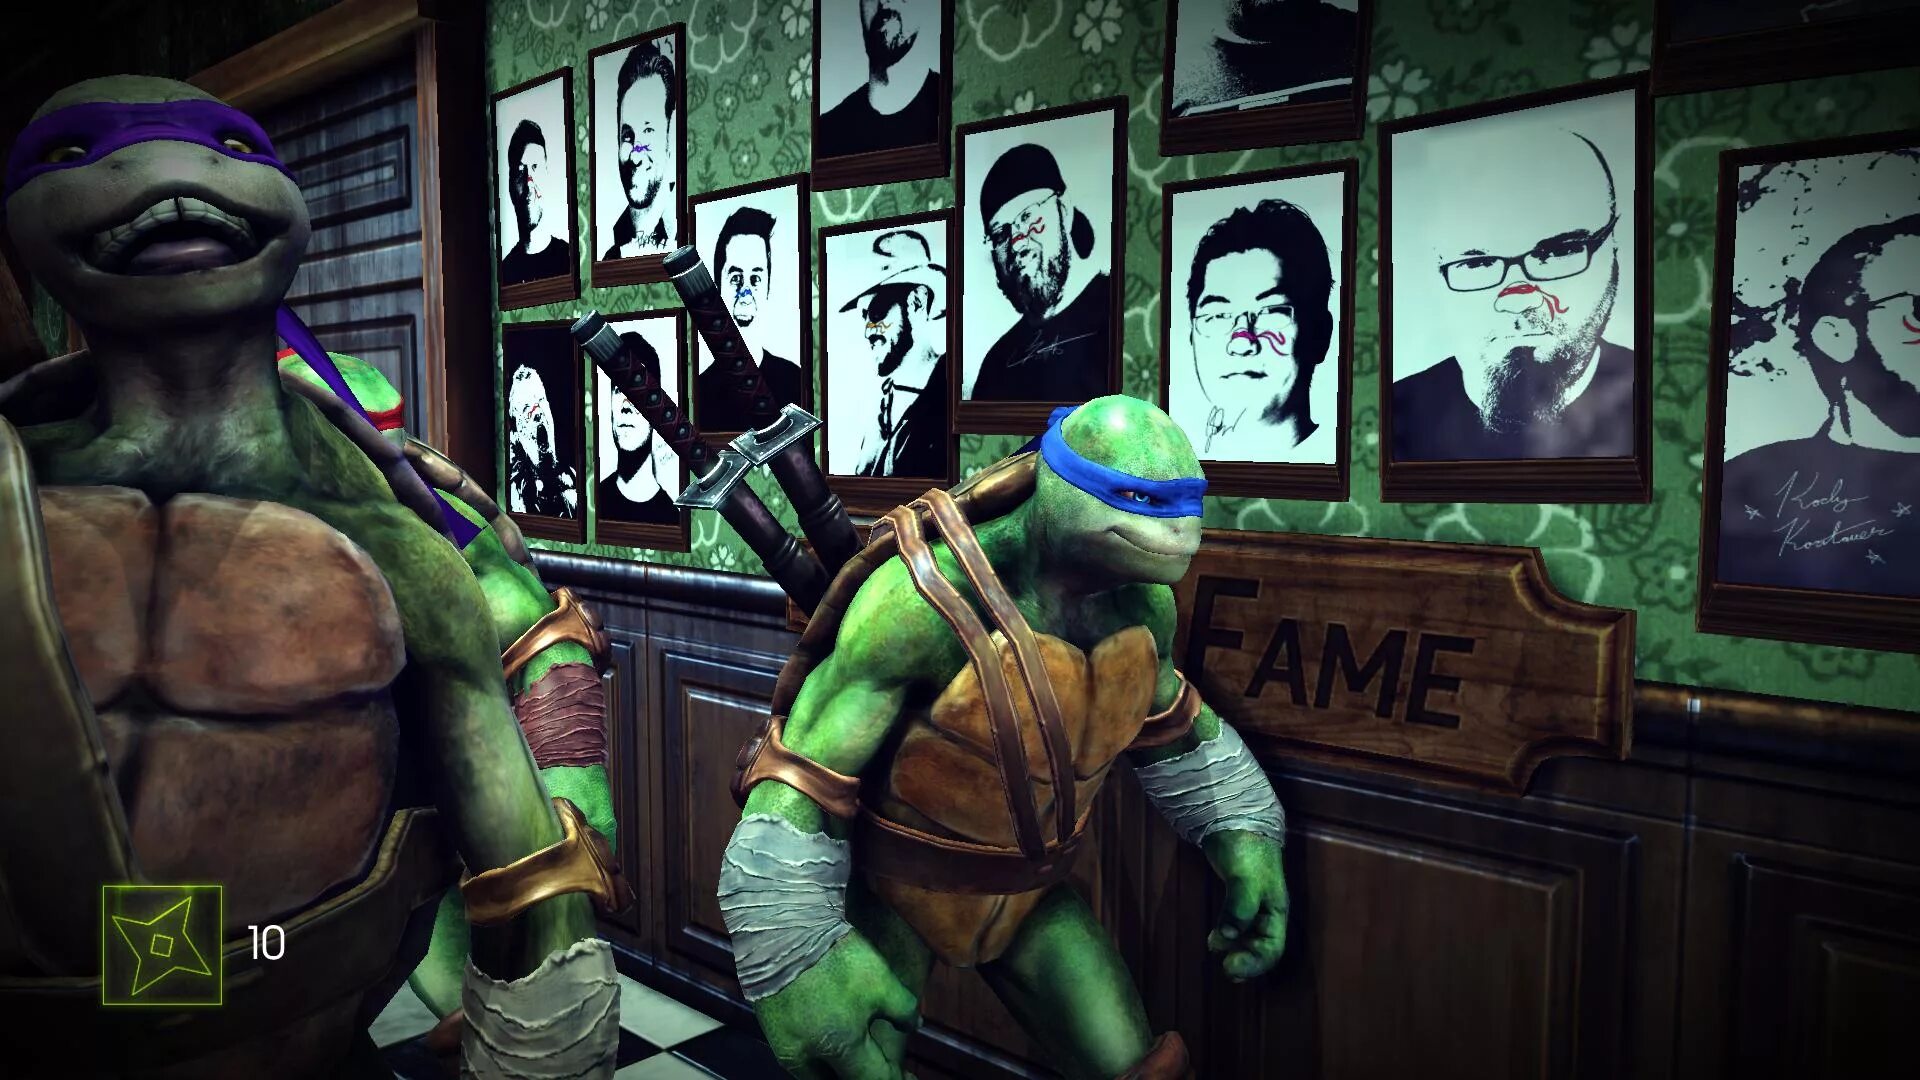 Turtles 2013. Teenage Mutant Ninja Turtles (2013). TMNT out of the Shadows игра. Teenage Mutant Ninja Turtles: out of the Shadows (2013). Черепашки ниндзя 2007 игра.